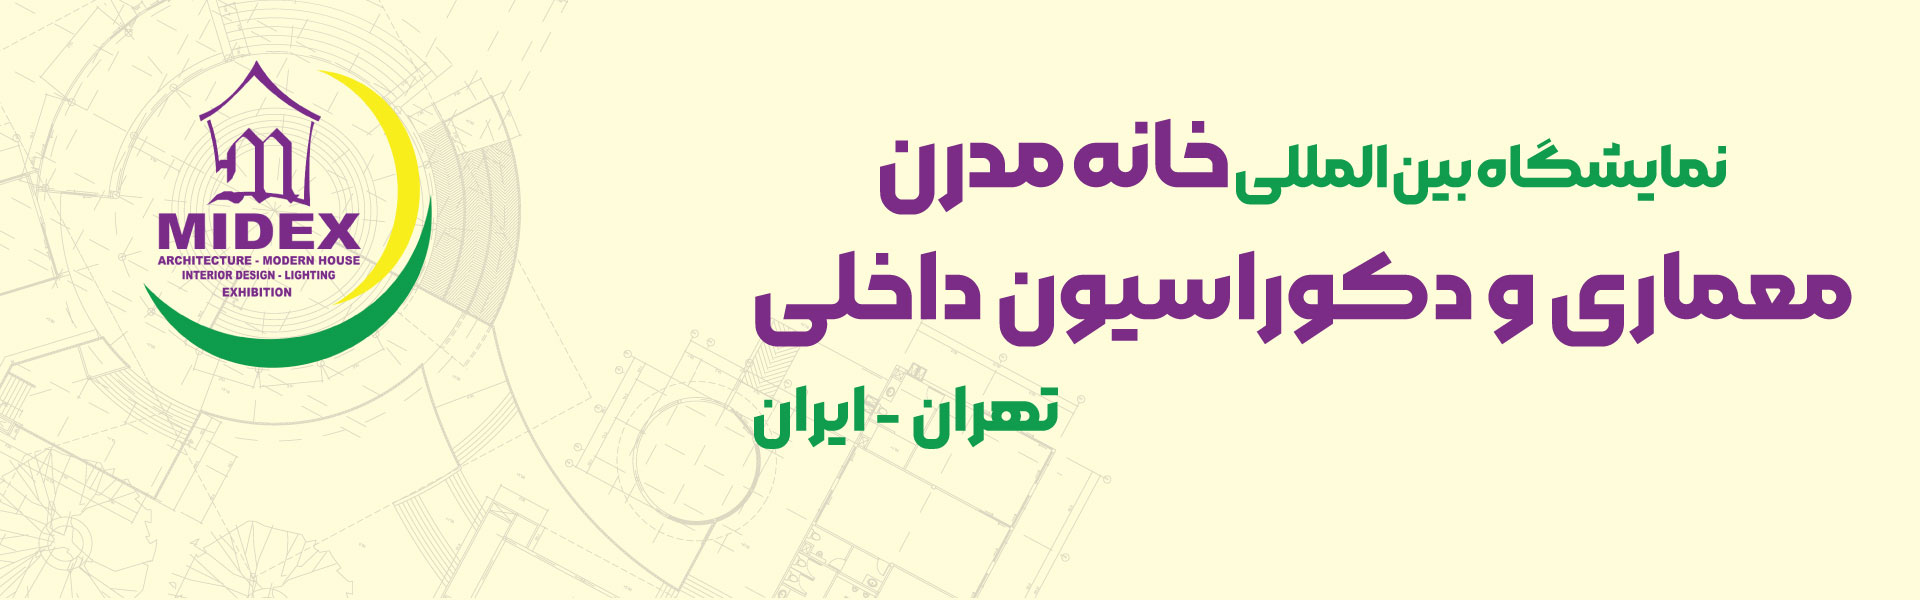 نمایشگاه بین المللی خانه مدرن، معماری و دکوراسیون داخلی (میدکس) تهران ایران مرکز نمایشگاهی سئول